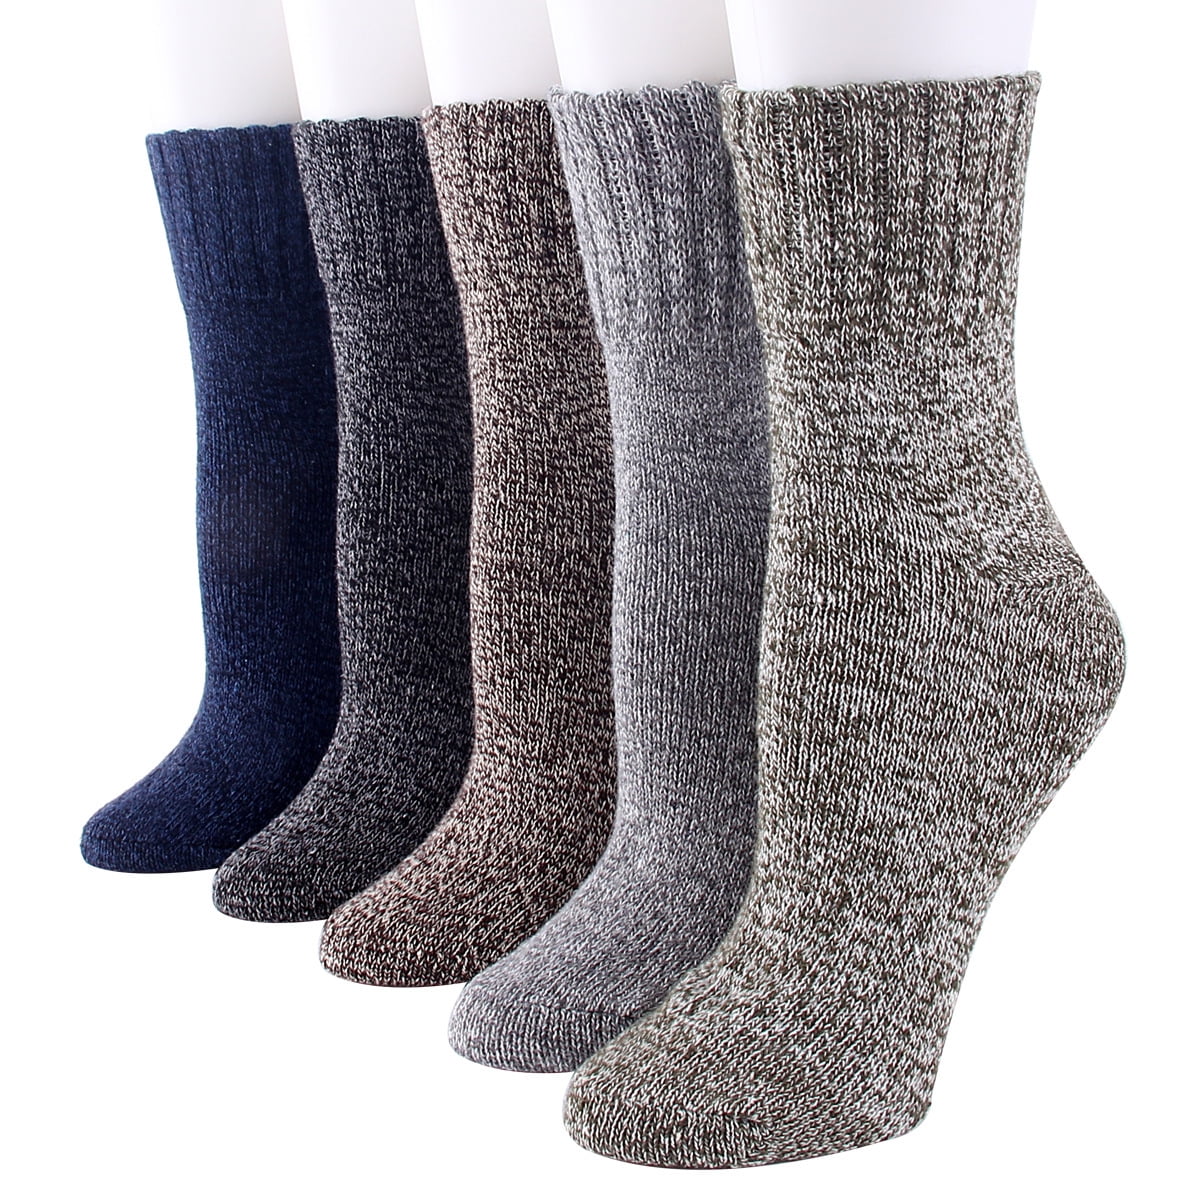 KmelWomen's 5 Pairs Thick Wool Blend Socks Boot Socks Size 8-11 ...